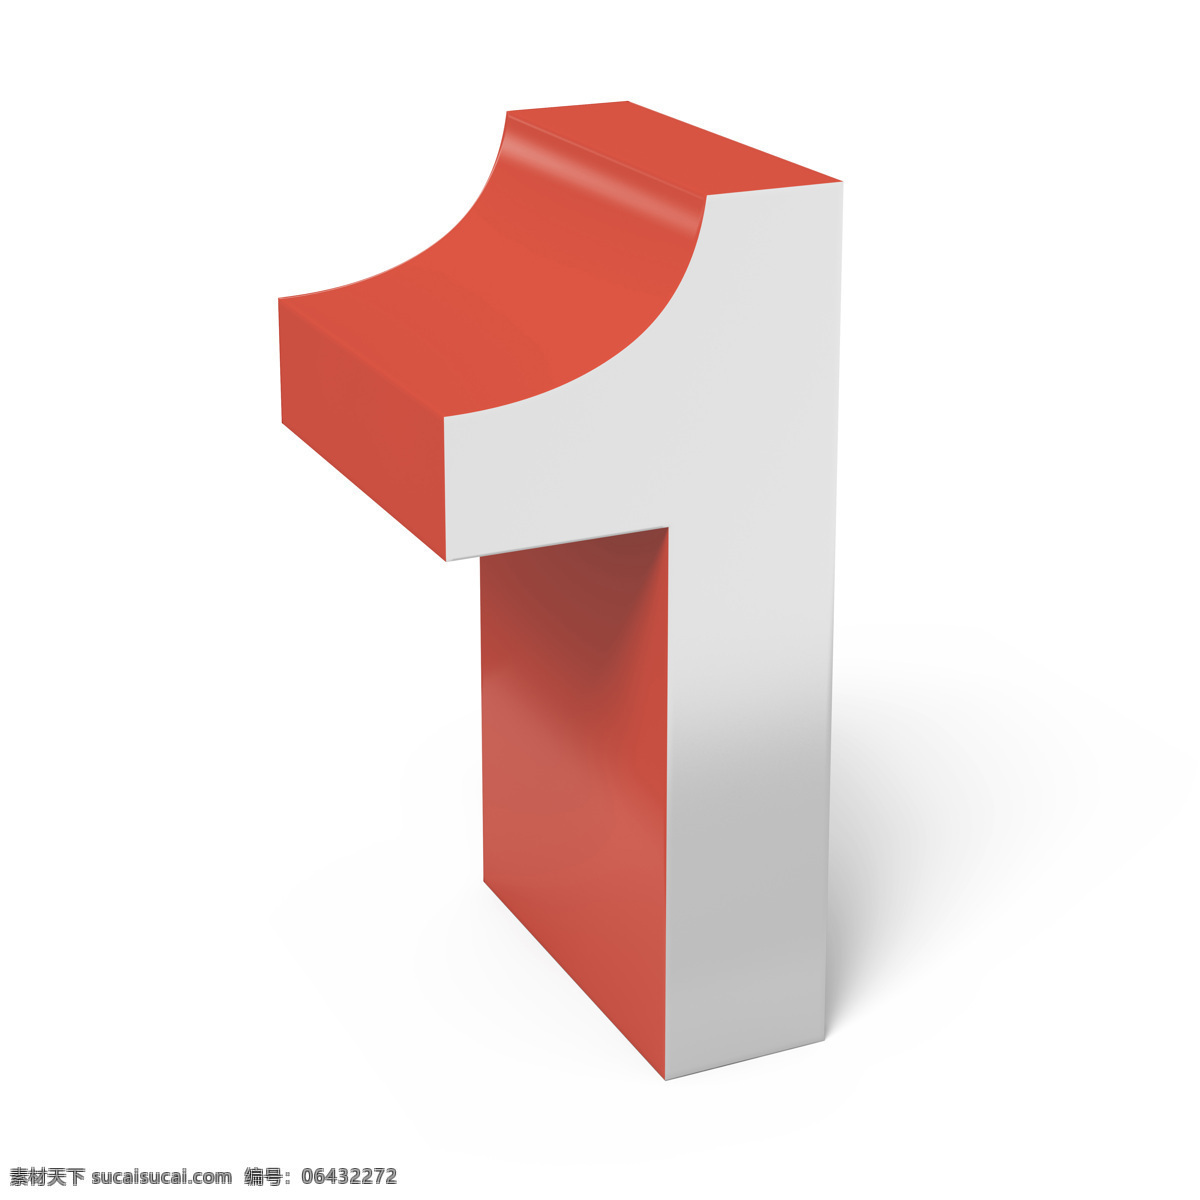 立体数字 数字 中文数字 阿拉伯数字 白色数字 红色数字 3d设计